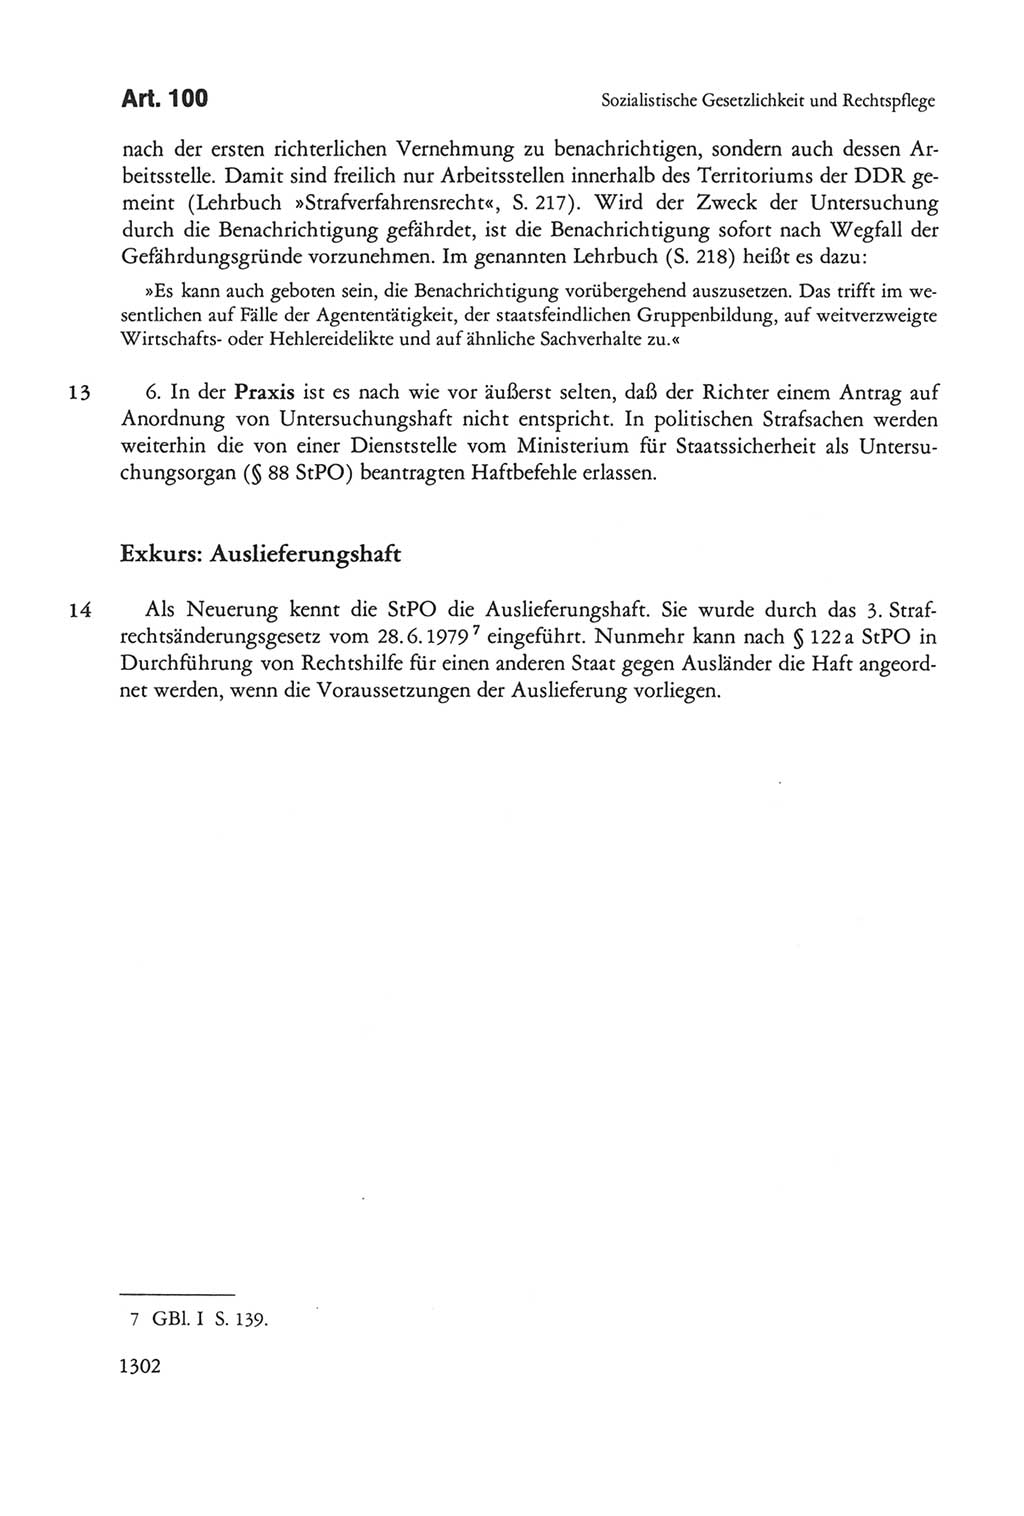 Die sozialistische Verfassung der Deutschen Demokratischen Republik (DDR), Kommentar 1982, Seite 1302 (Soz. Verf. DDR Komm. 1982, S. 1302)